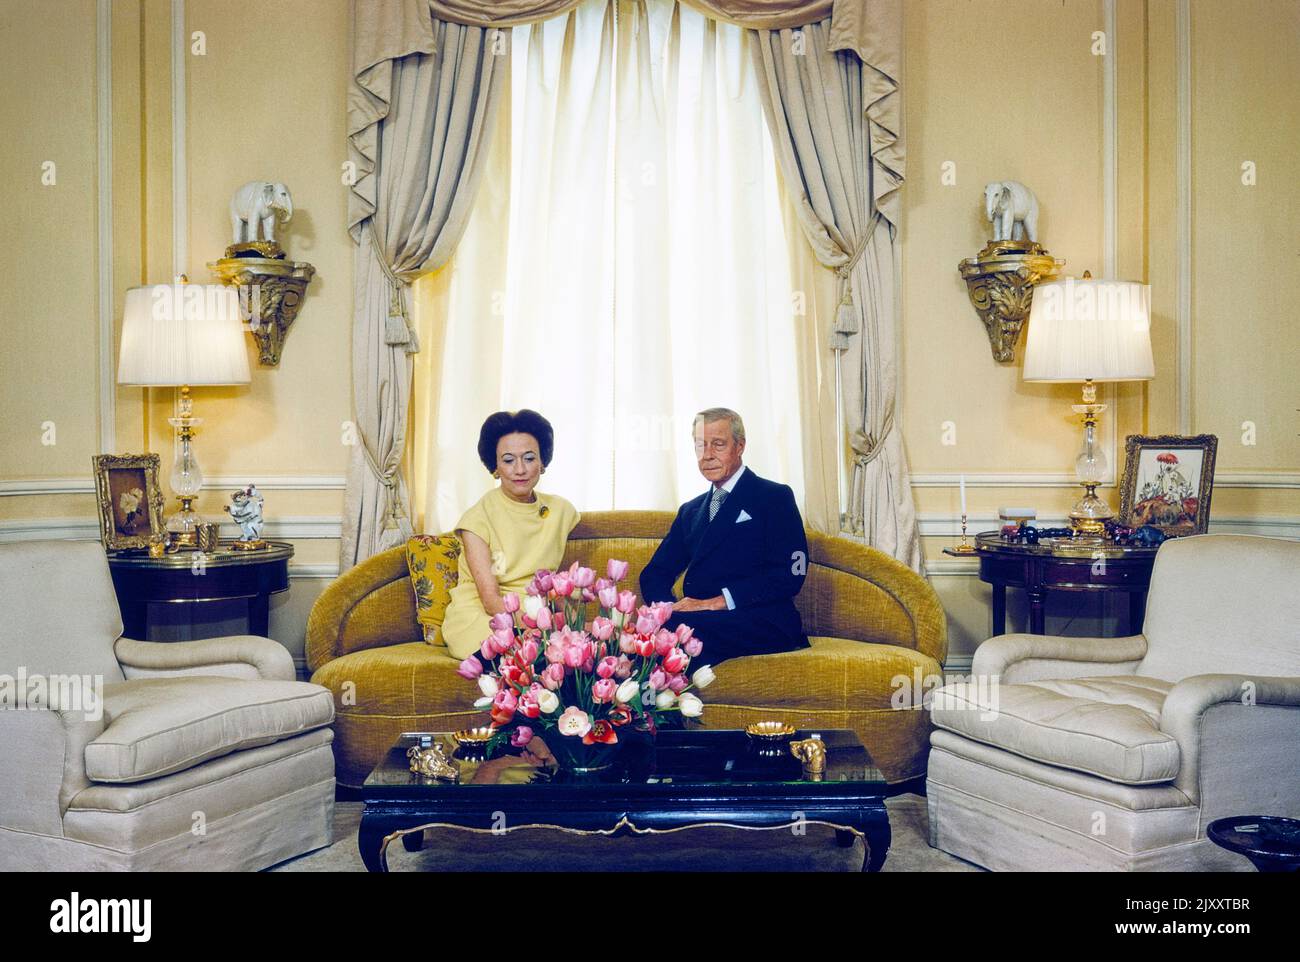 Duchessa di Windsor, Wallis Simpson e Duca di Windsor, ex Re Edoardo III del Regno Unito e domini dell'Impero britannico, Ritratto seduto, Waldorf Astoria Hotel, New York City, New York, USA, toni Frissell Collection, maggio 1966 Foto Stock